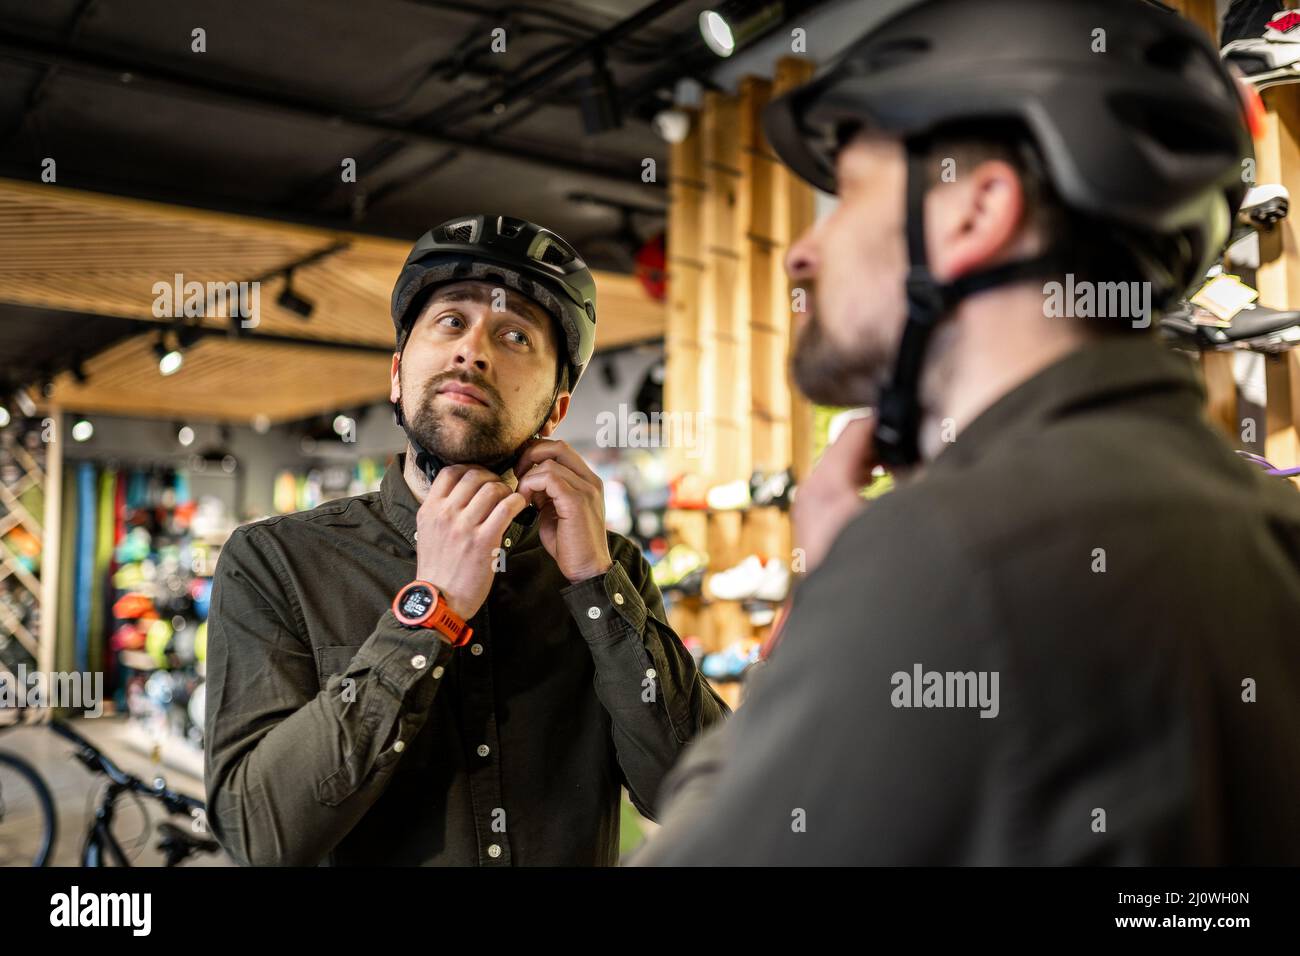 Kaukasischer Mann versucht auf schwarzem Fahrradhelm in der Nähe des Spiegels in Sportartikelgeschäft. Männlicher Käufer wählt Sicherheitshelm für Radfahren. Stockfoto